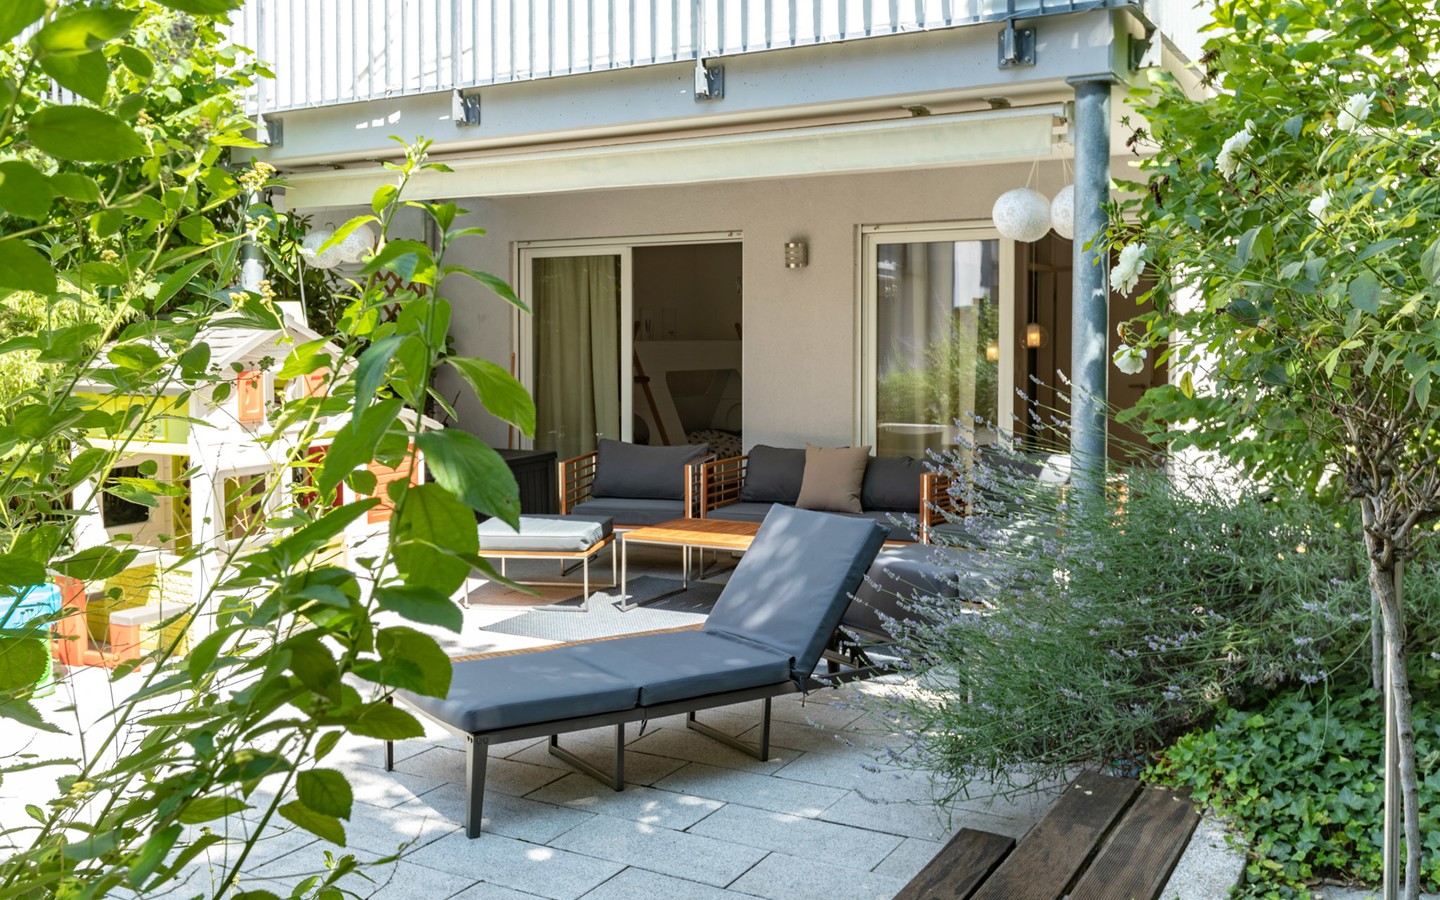 Terrasse - Haus-im-Haus-Feeling: Exklusive Maisonette-Wohnung mit separatem Eingang, Terrasse und Balkon